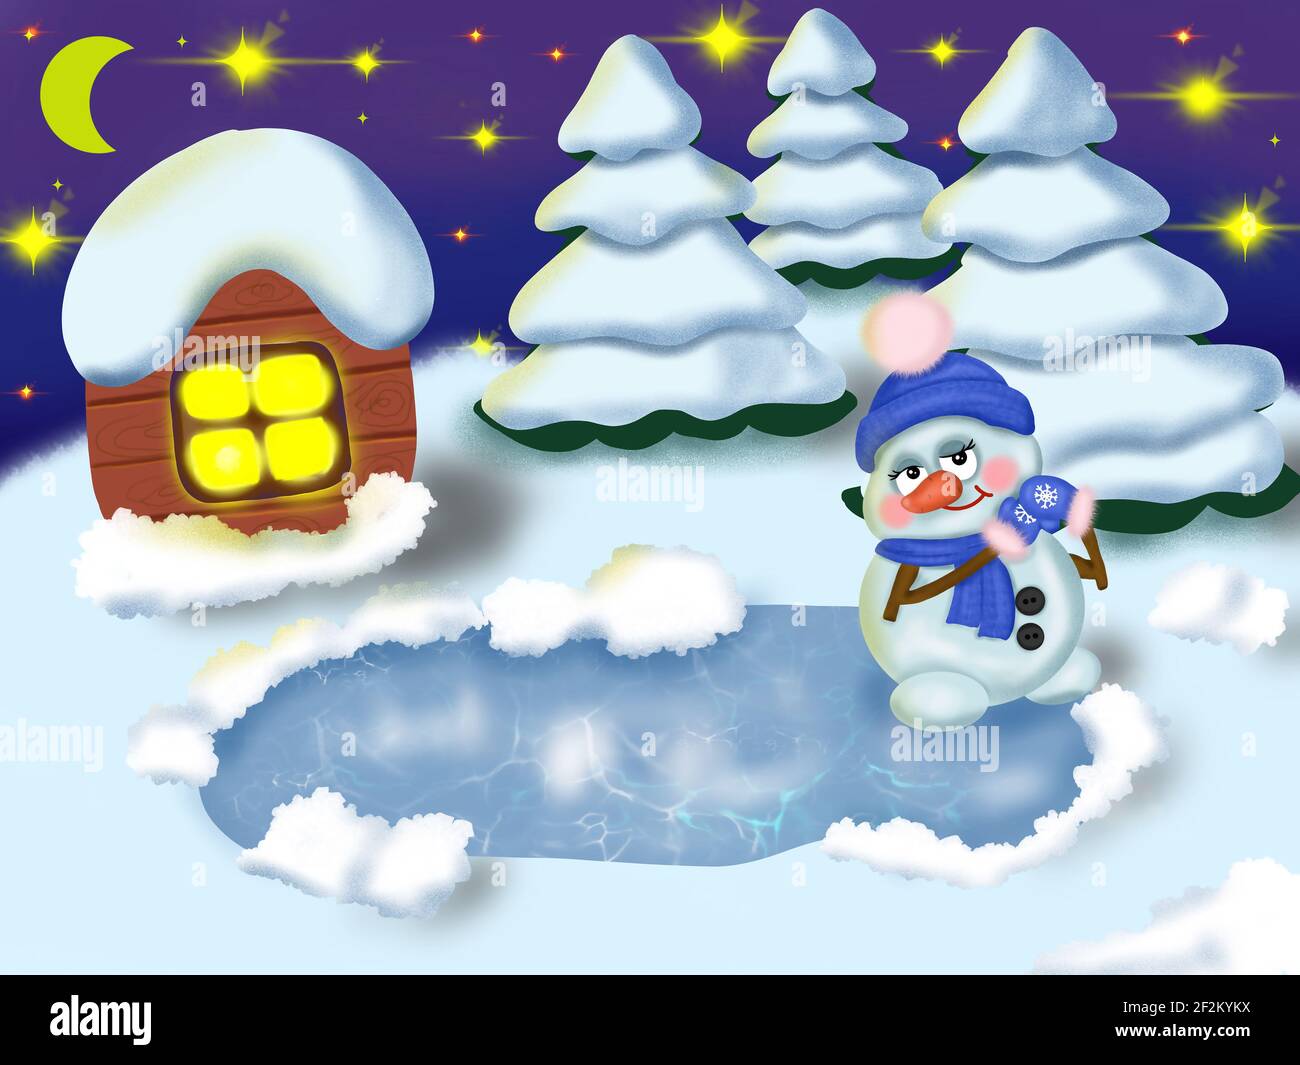 Il pupazzo di neve si alza sul ghiaccio in una serata invernale Le stelle e la luna stanno bruciando la casa e il Natale gli alberi sono coperti di neve Foto Stock